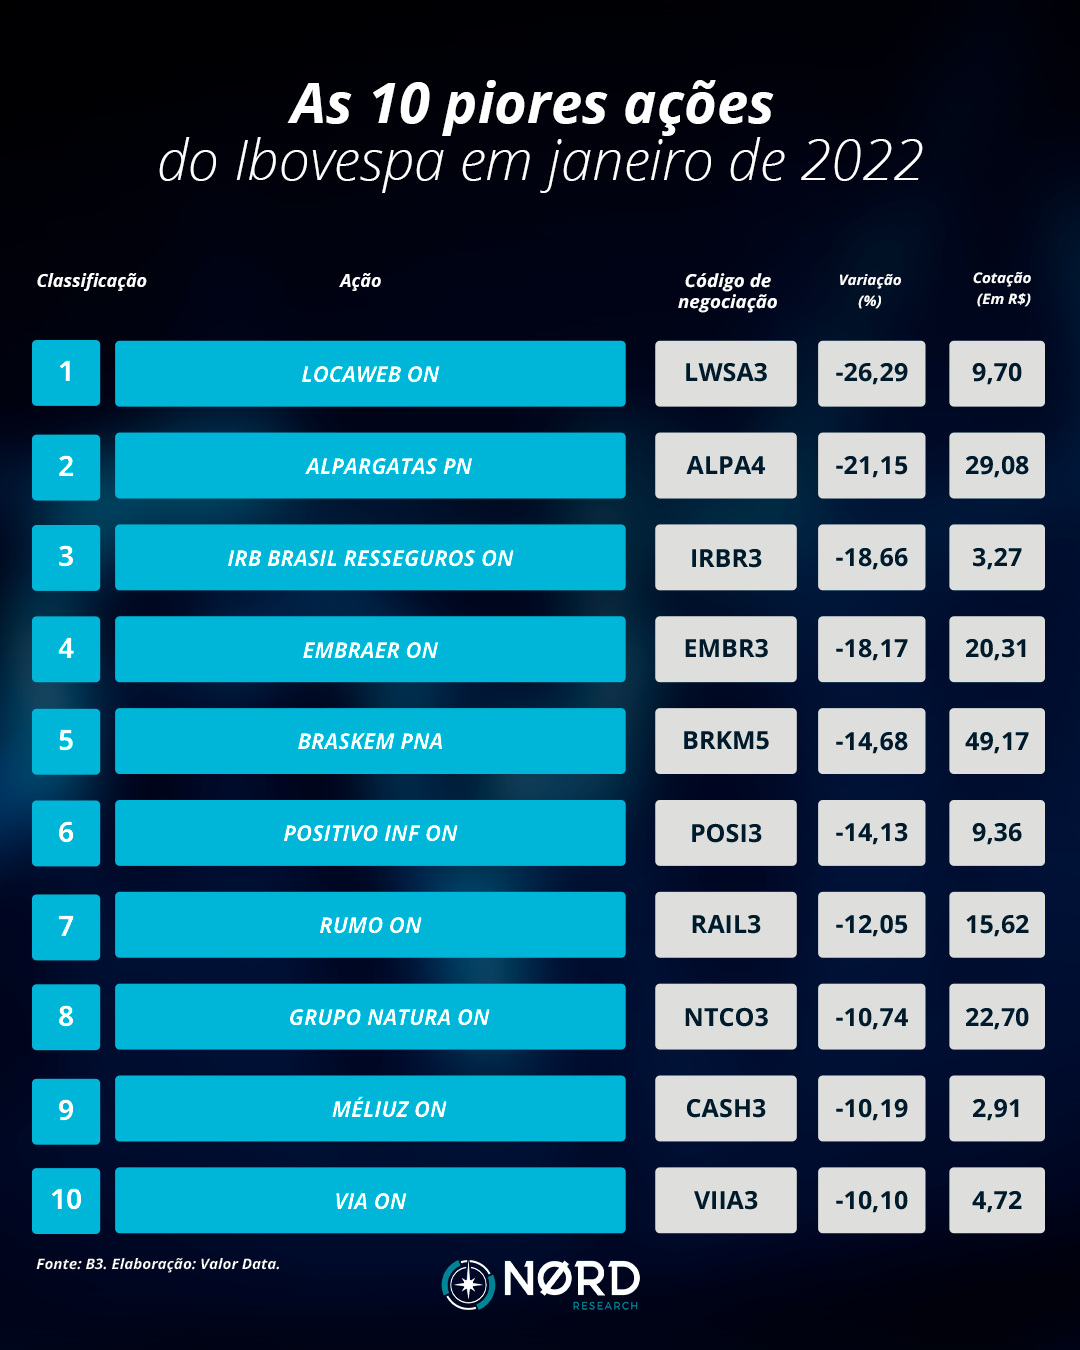 As 10 piores ações do Ibovespa em janeiro de 2022.